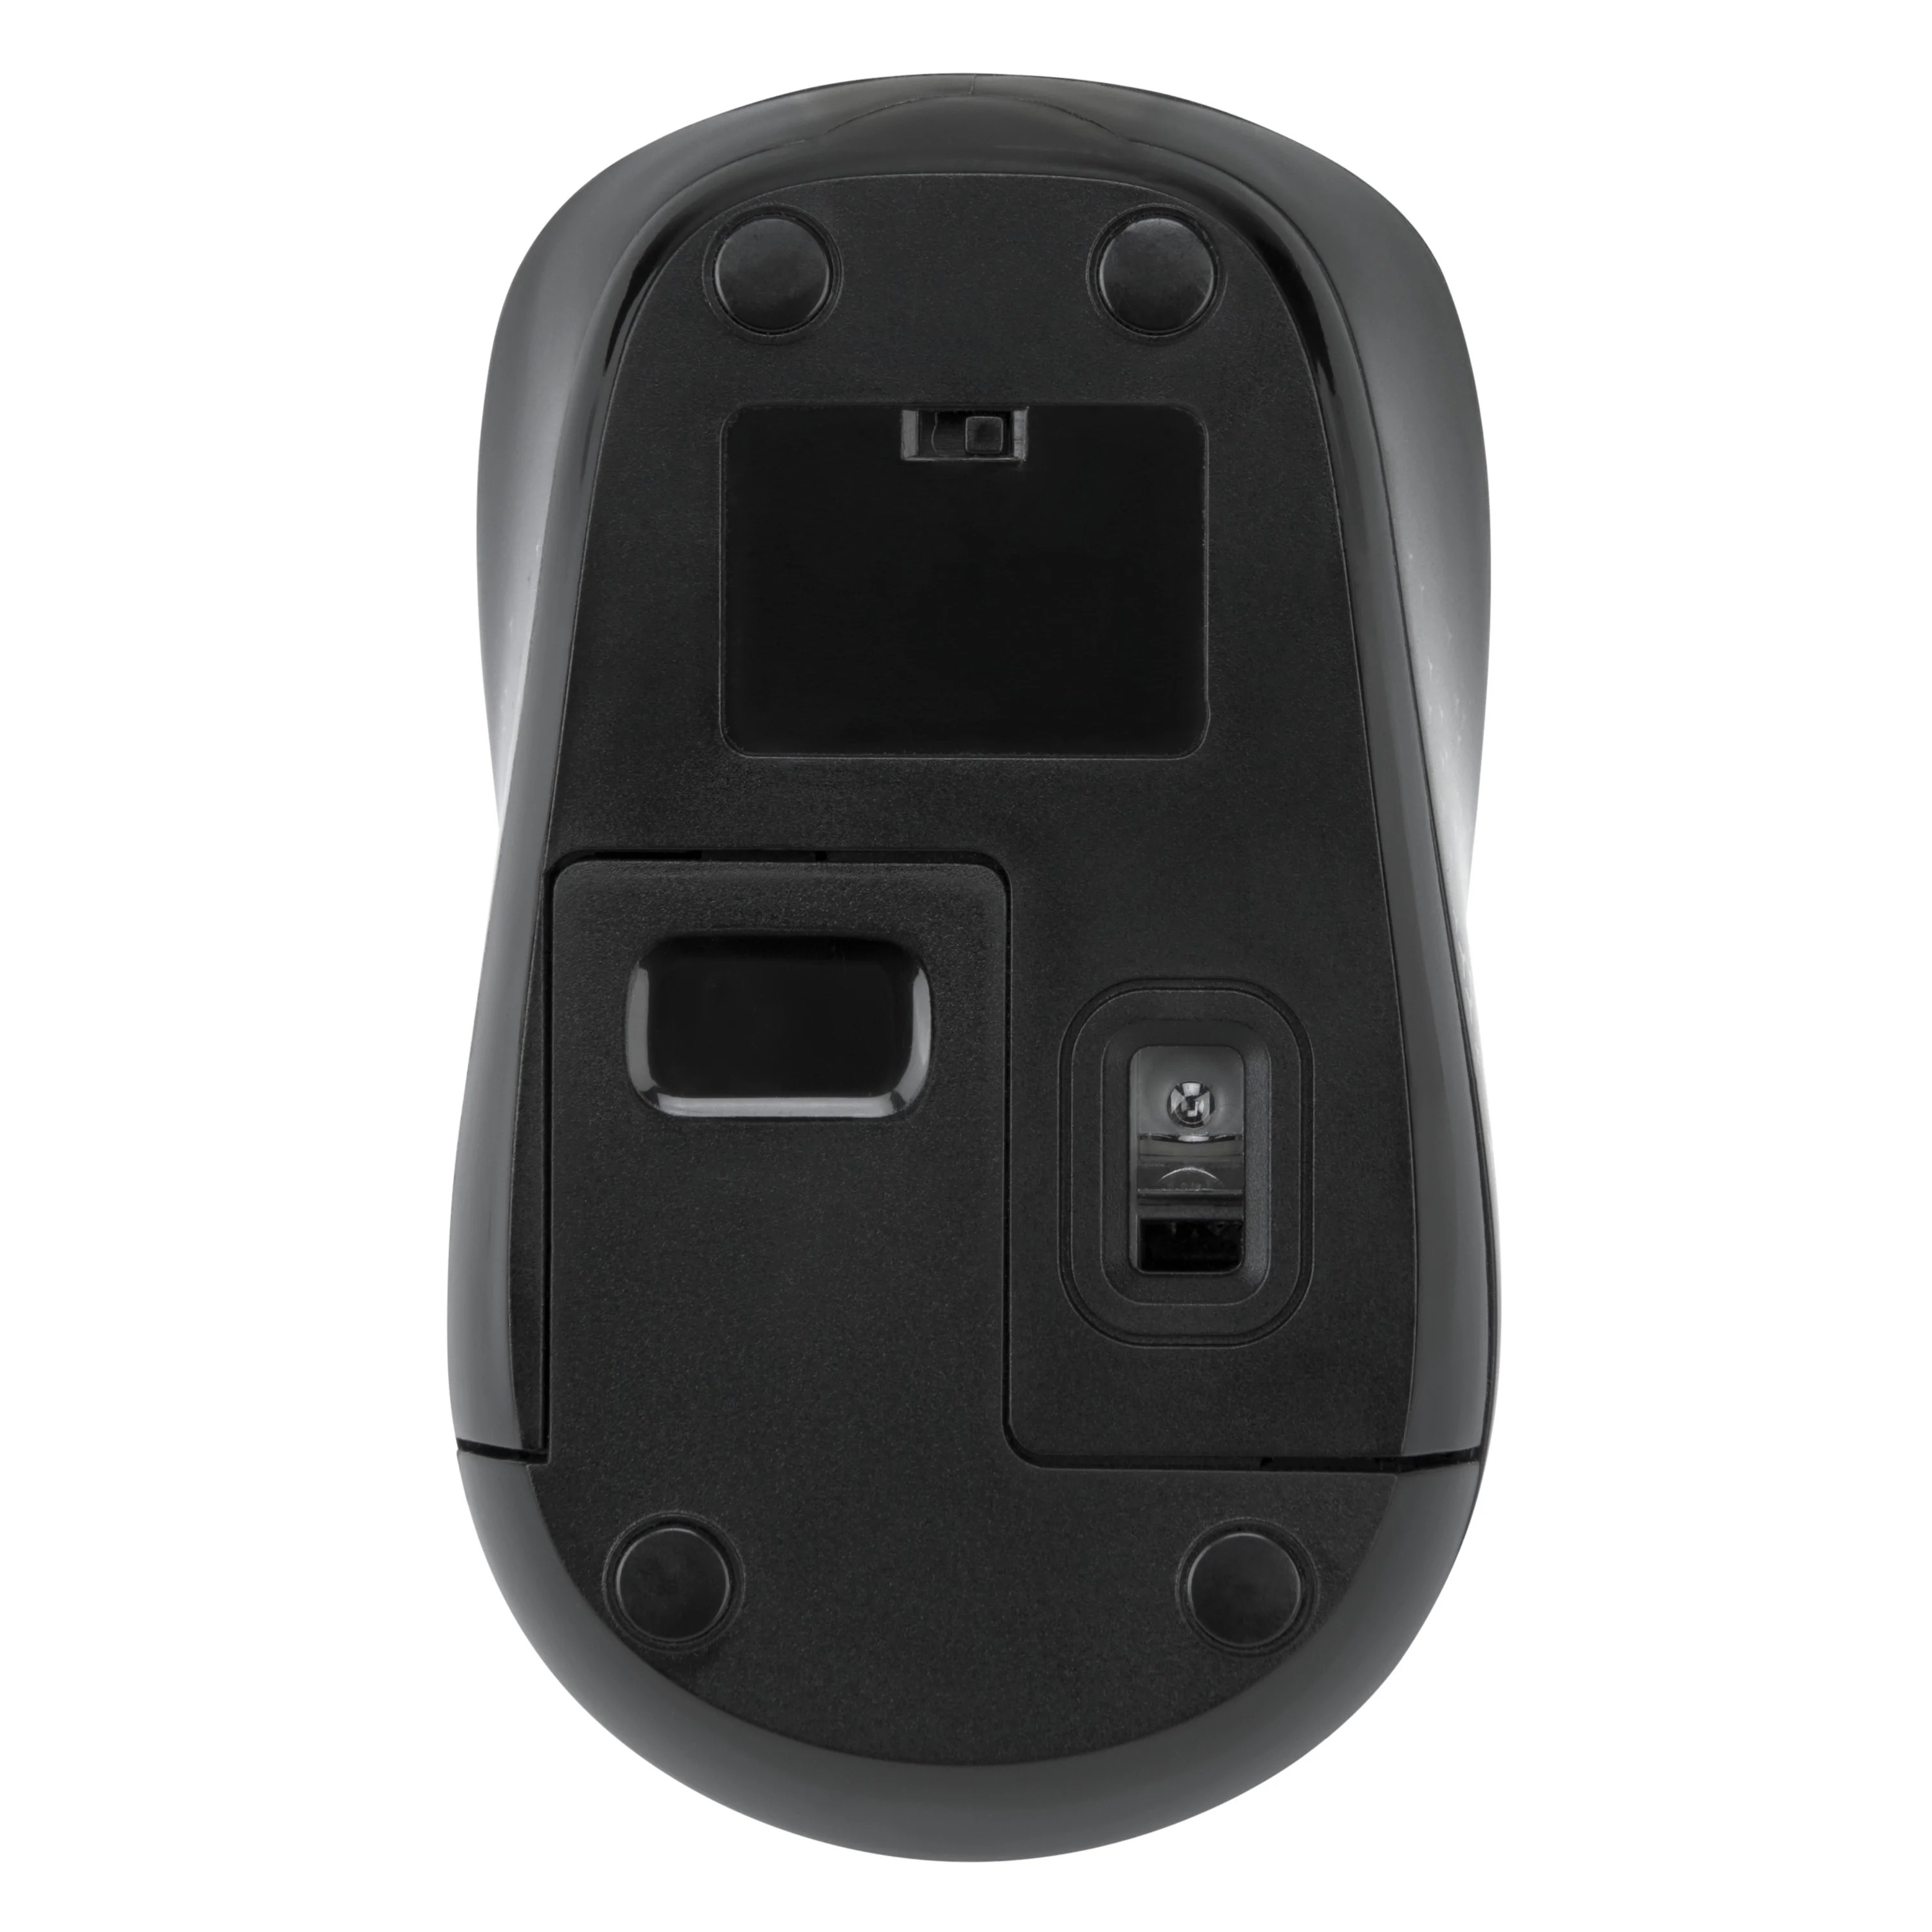 Chuột không dây Targus W620 Black - USB 2.4GHz, thiết kế thuận 2 tay, phù hợp PC/ Laptop - Hàng chính hãng